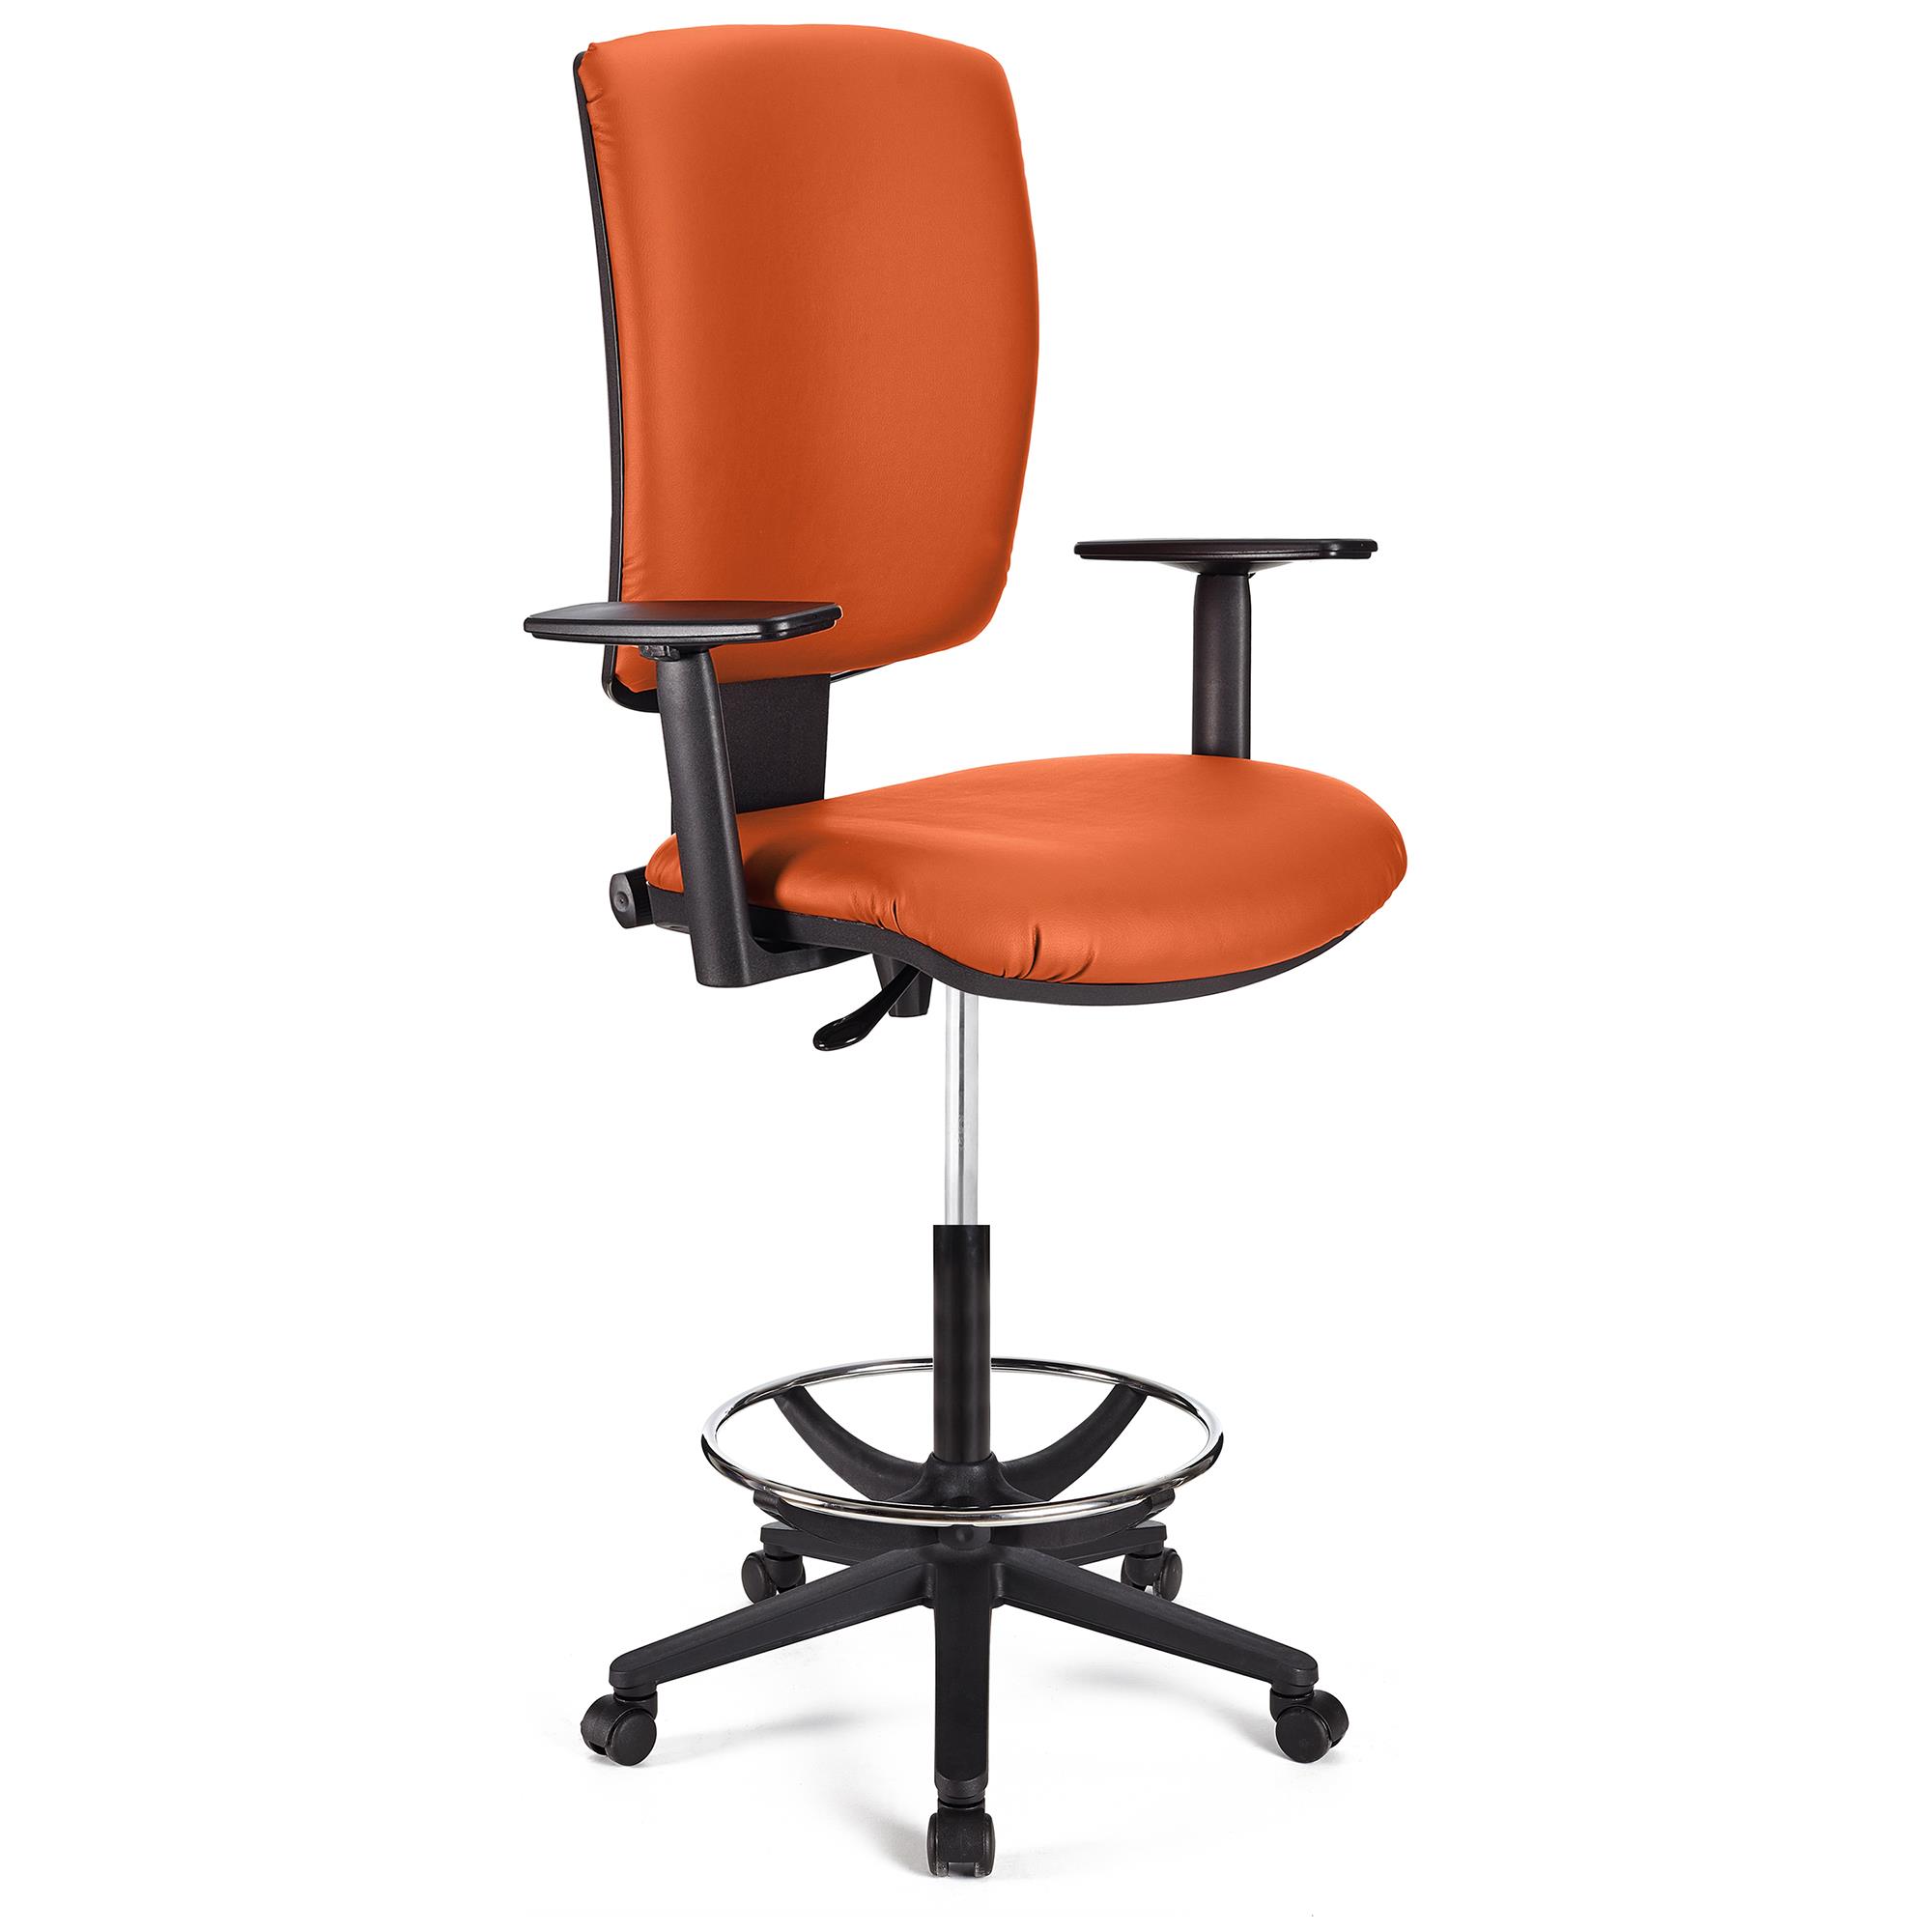 Bürohocker ATLAS PLUS LEDER, verstellbarer Rückenlehne, große Polsterung, Farbe Orange